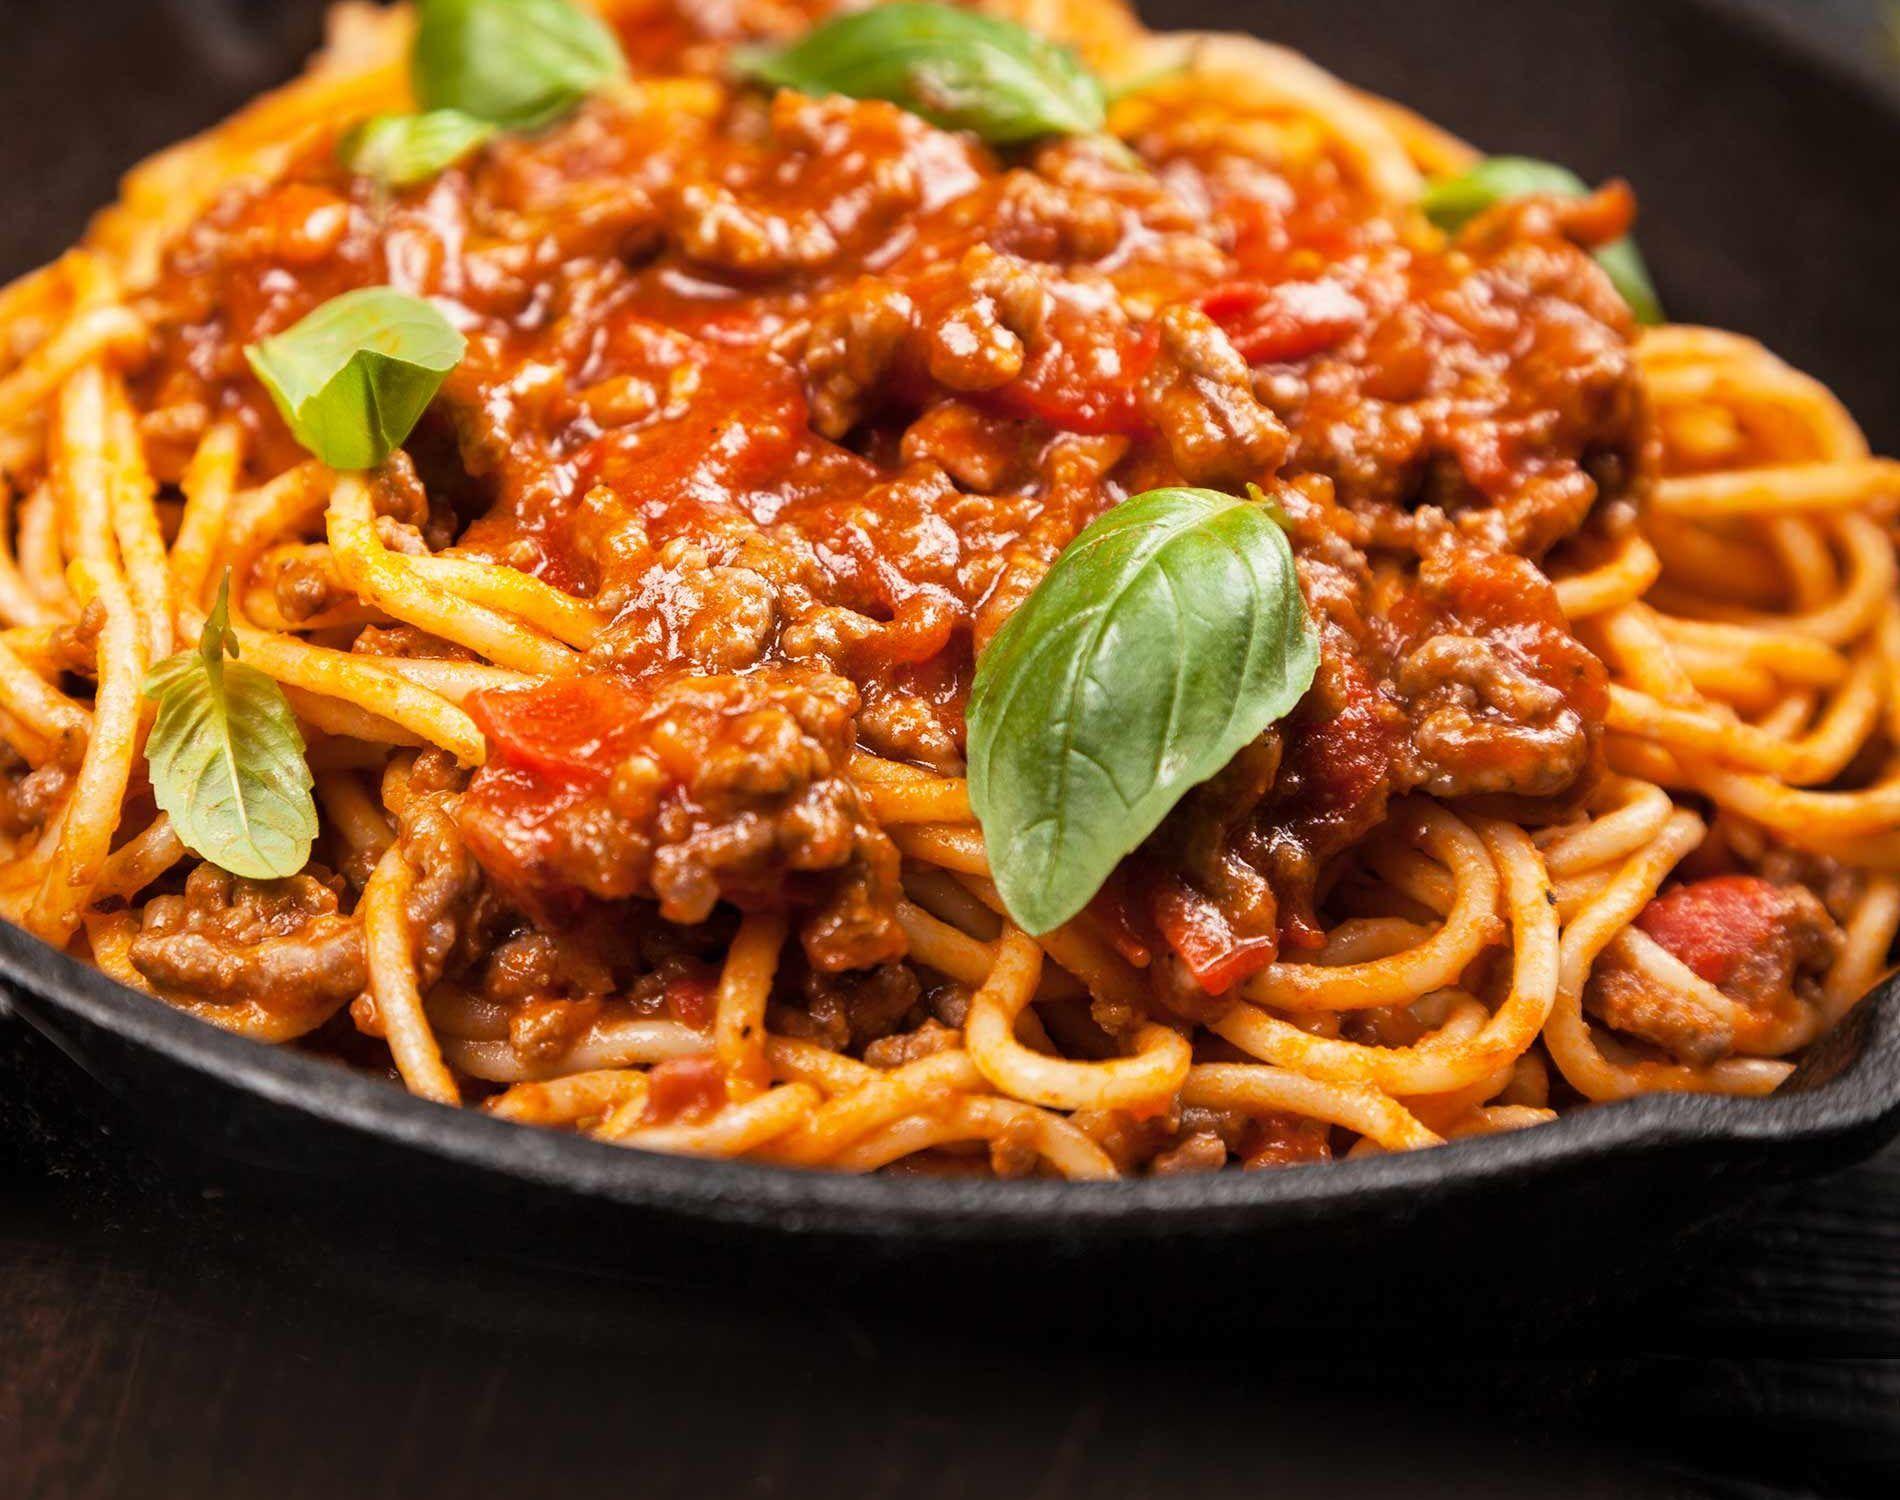 Mögt ihr Spaghetti Bolognese? (essen, Umfrage, Abstimmung)